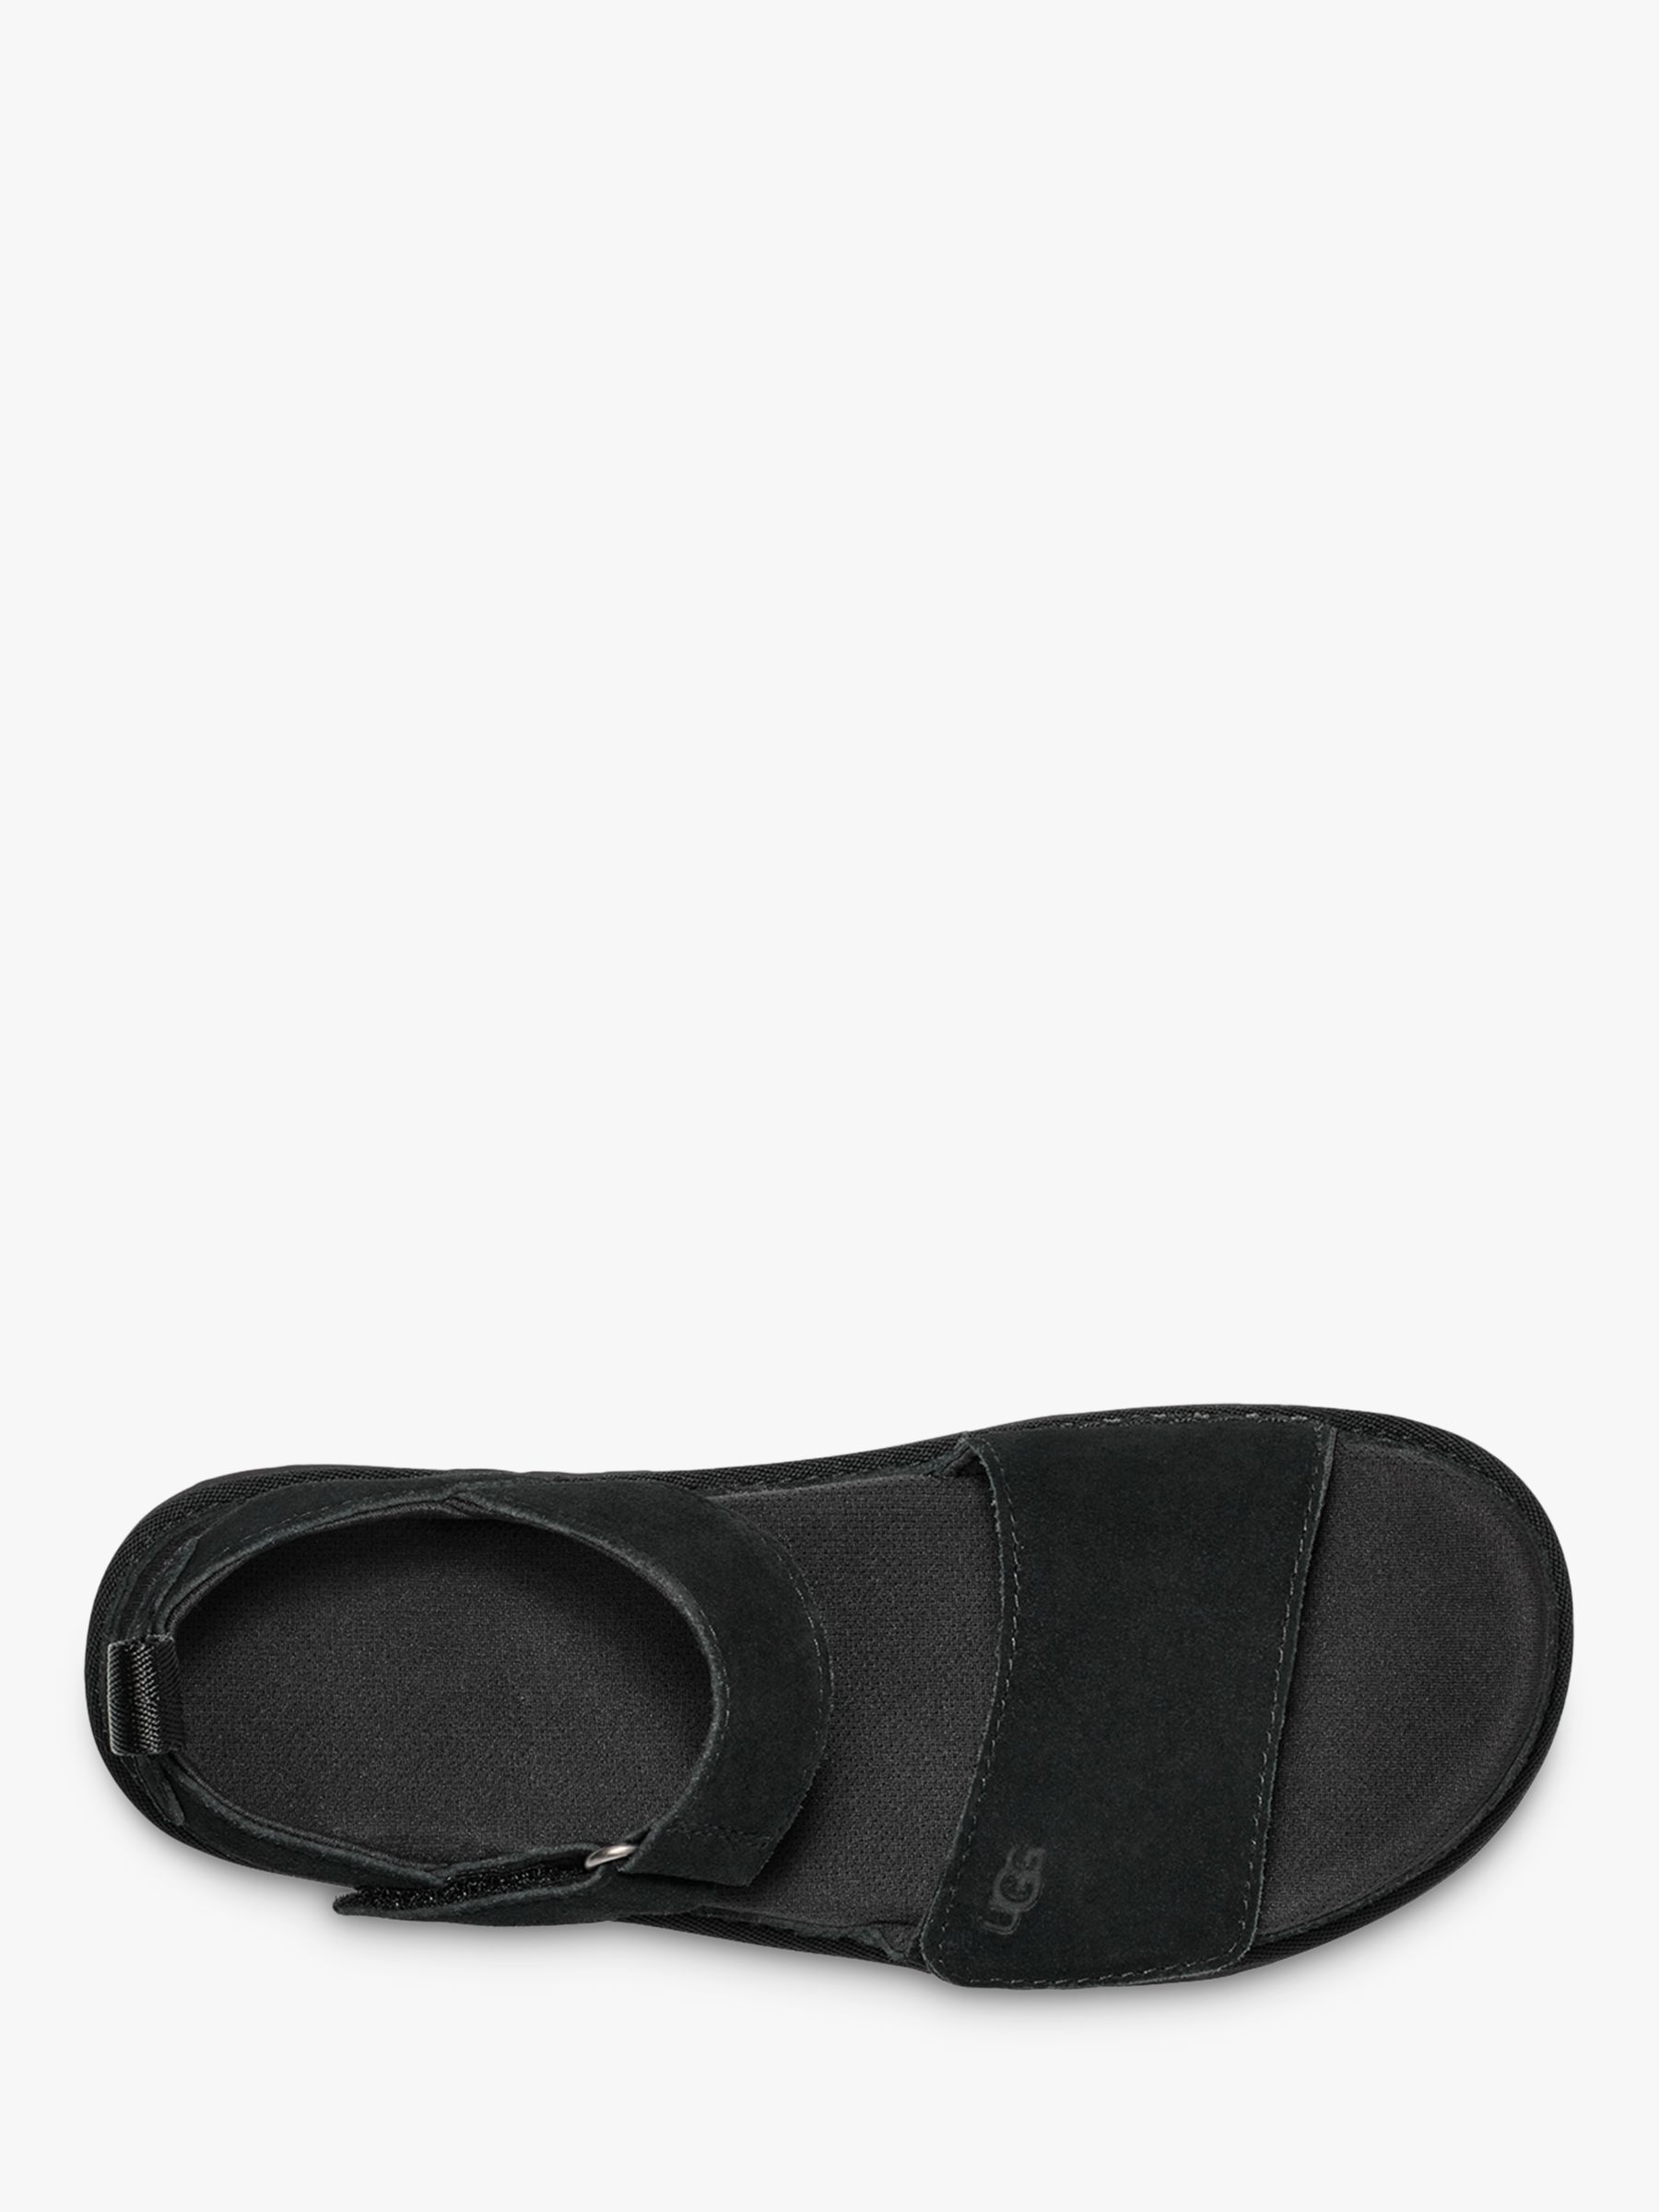 Buy UGG Goldenstar Platform Sandals Online at johnlewis.com